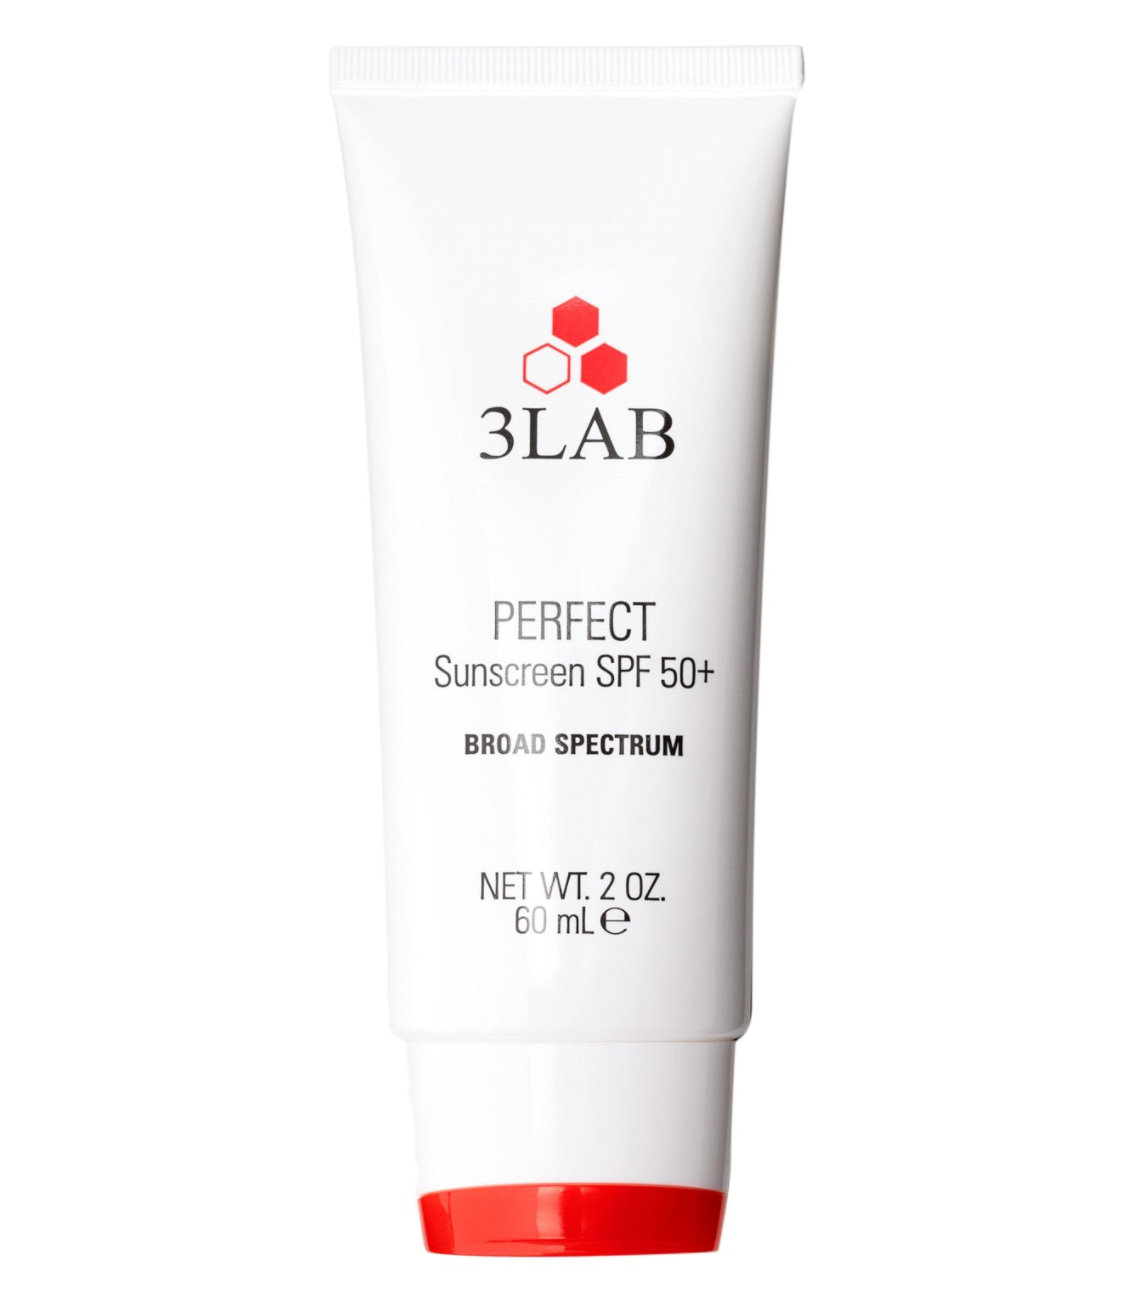 Идеальный солнцезащитный крем Perfect Sunscreen SPF 50 Broad Spectrum 3LAB